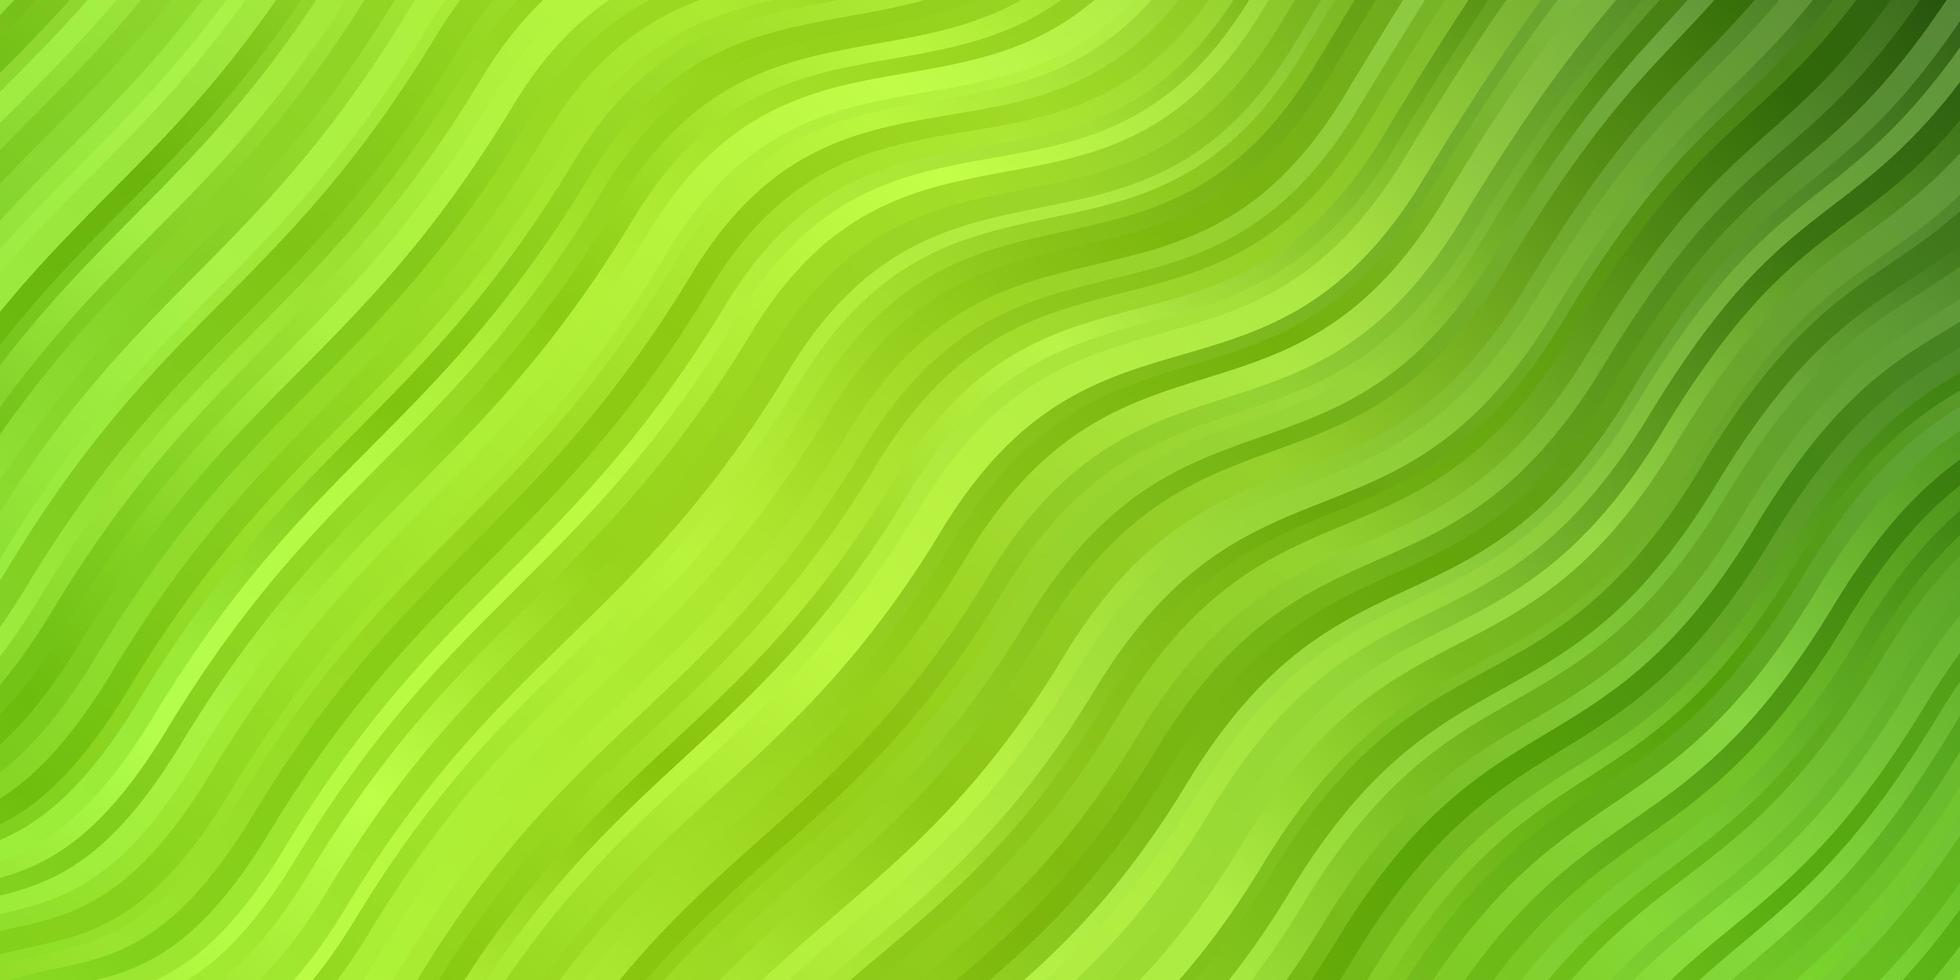 ljusgrön, gul vektorbakgrund med kurvor. vektor